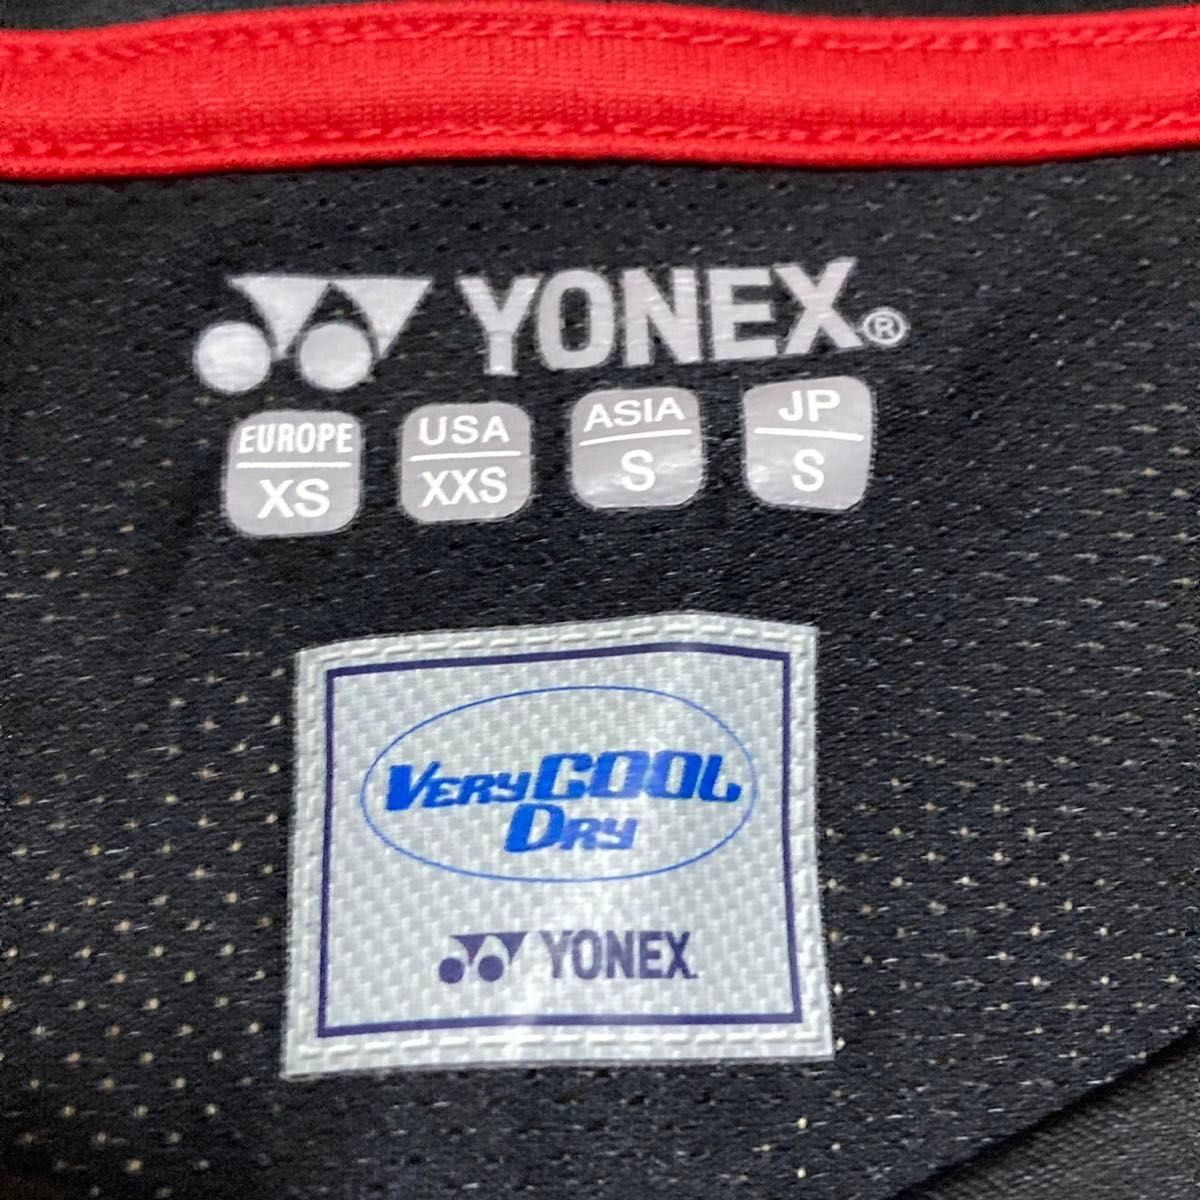 ヨネックス YONEX ゲームシャツ ブルー ウエア S メンズ シャツ 半袖 人気  試合 バドミントン ソフトテニス テニス